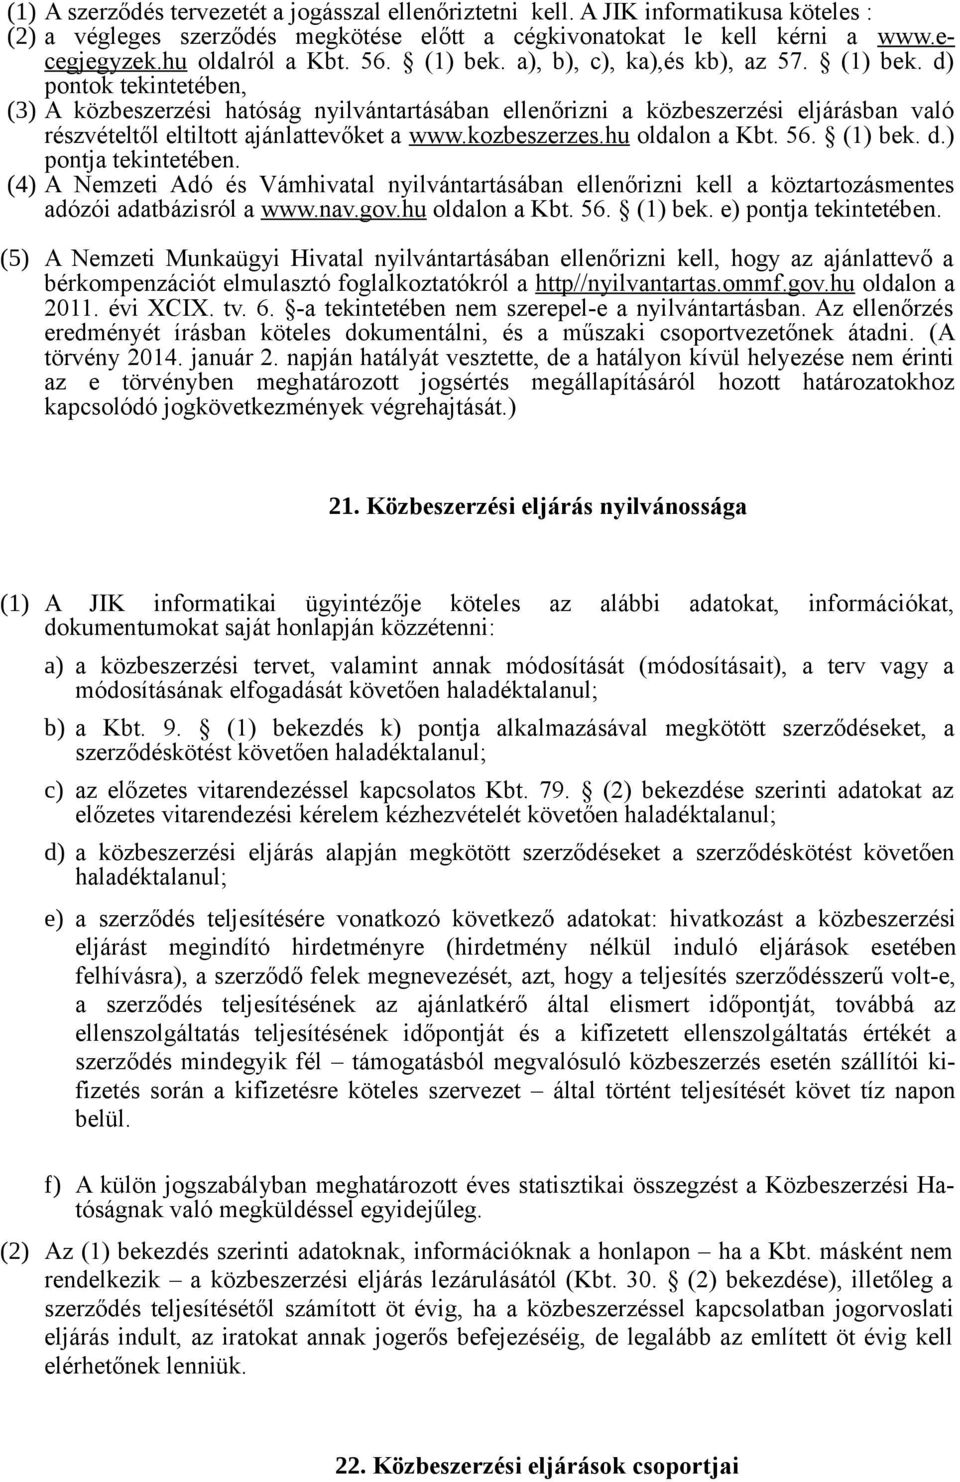 kozbeszerzes.hu oldalon a Kbt. 56. (1) bek. d.) pontja tekintetében. (4) A Nemzeti Adó és Vámhivatal nyilvántartásában ellenőrizni kell a köztartozásmentes adózói adatbázisról a www.nav.gov.